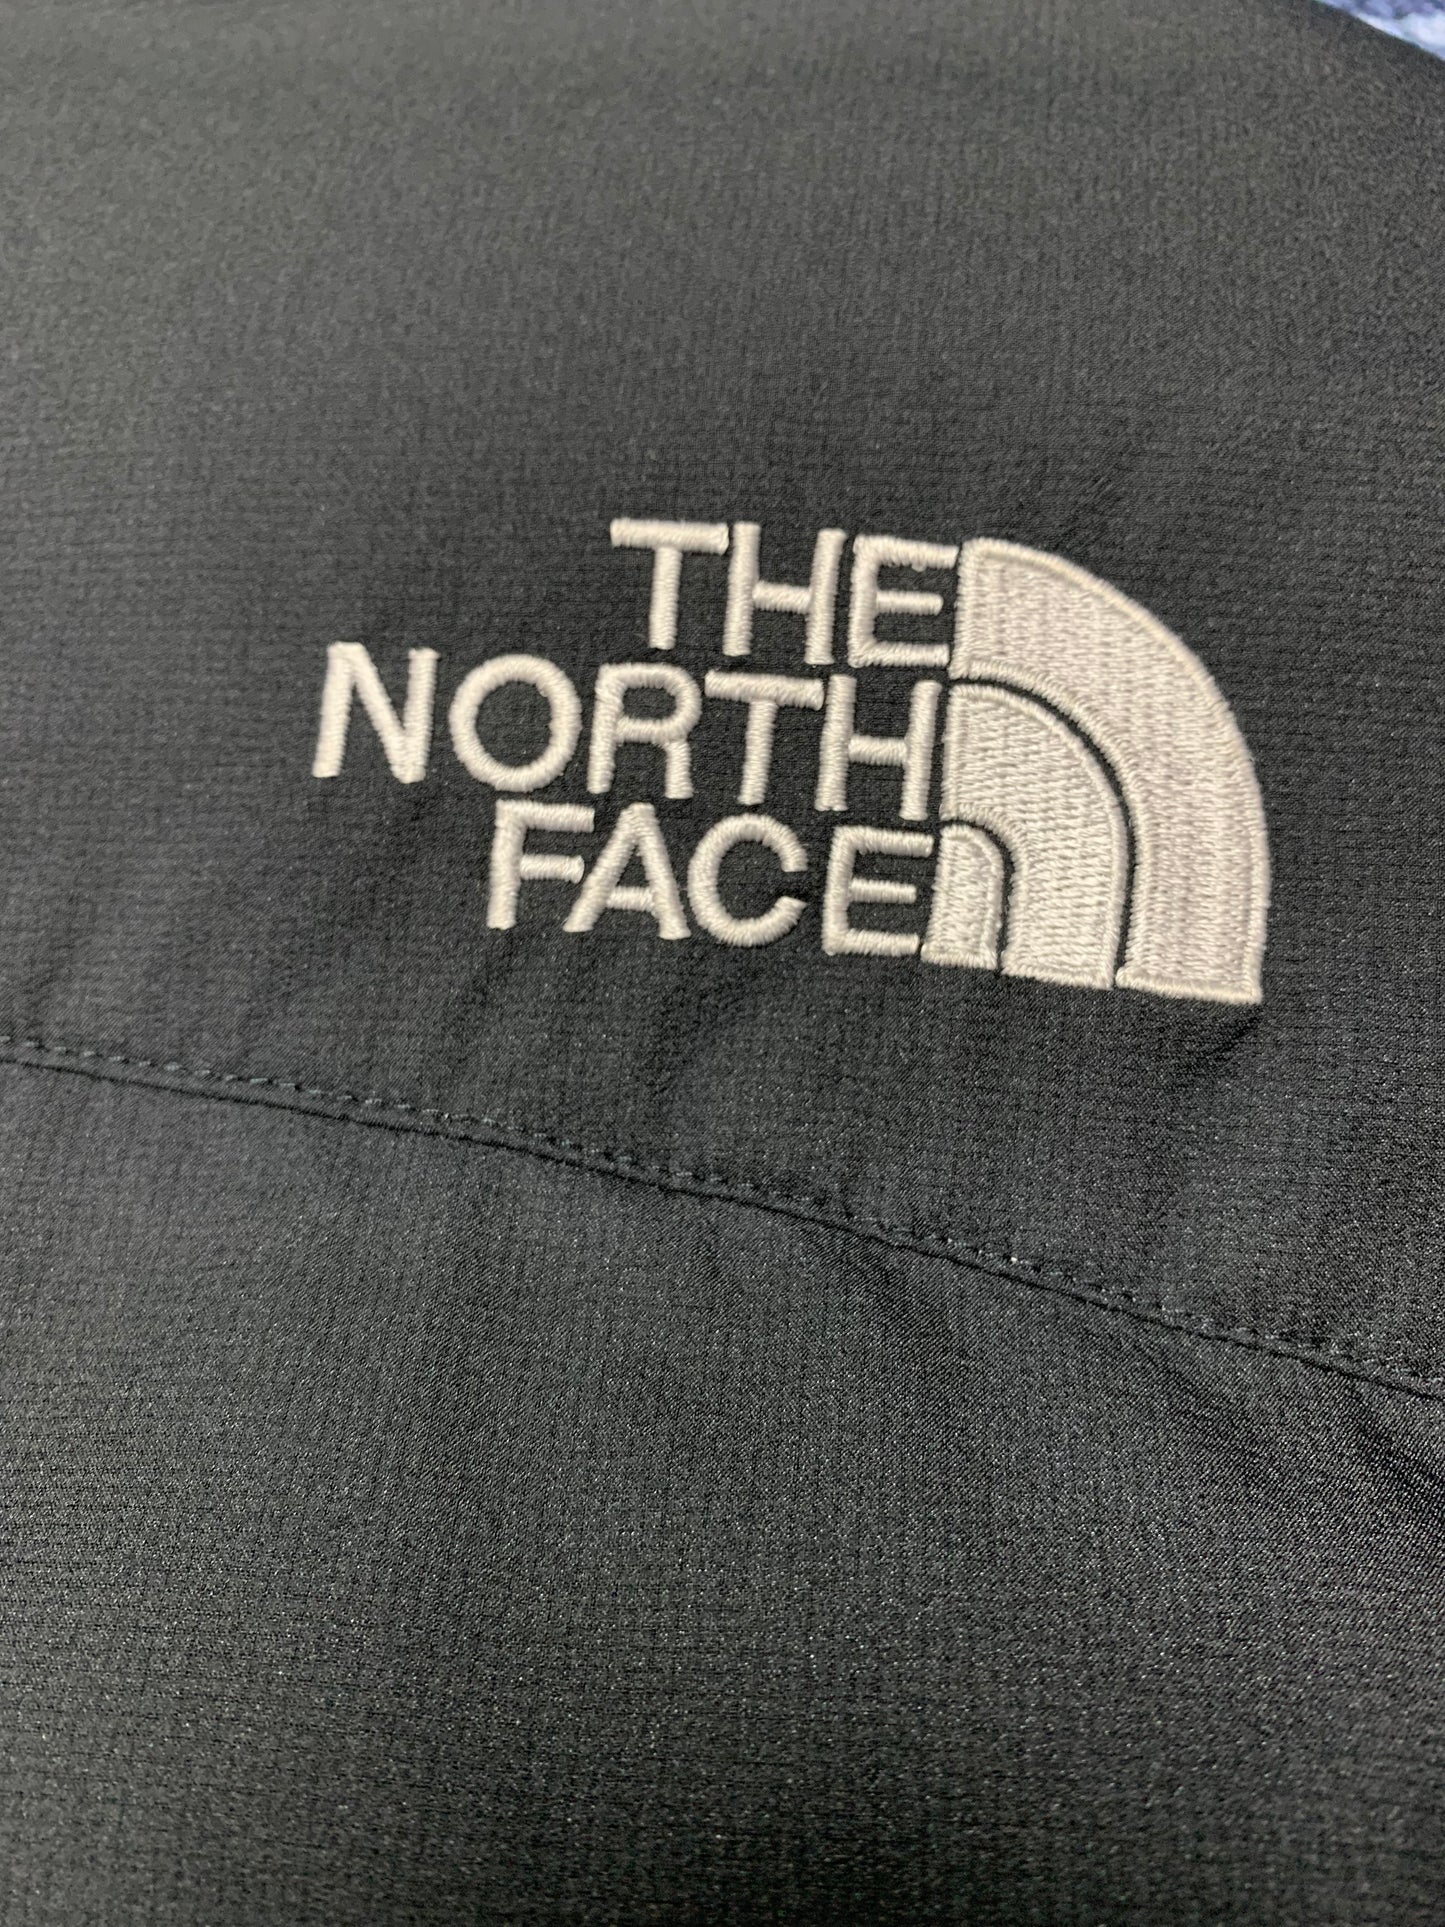 10007【THE NORTH FACE】ザノースフェイス メンズ シーズンロングダウンヒマラヤンコート ブラック 95